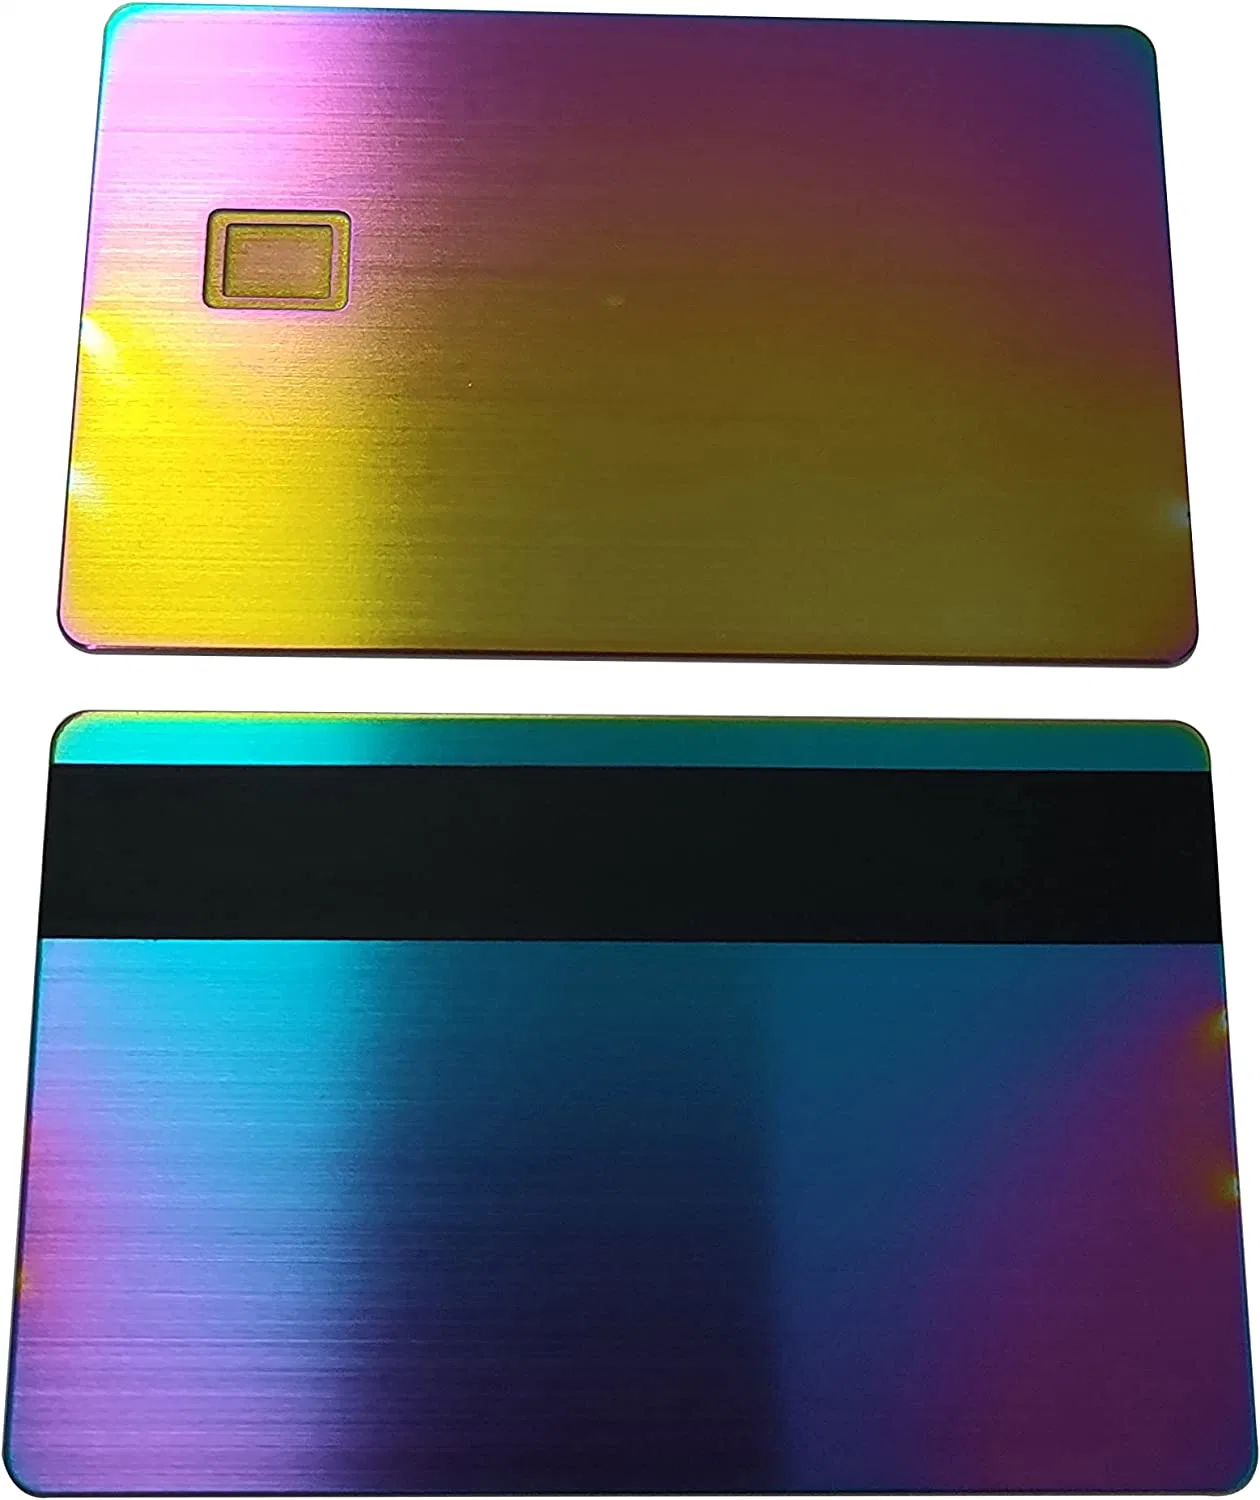 Tarjeta de crédito en blanco de metal de acero inoxidable para bricolaje, tarjeta de metal Rigg cepillada con acabado arcoíris, ranura para chip 4428 con banda magnética de 3 pistas Hico